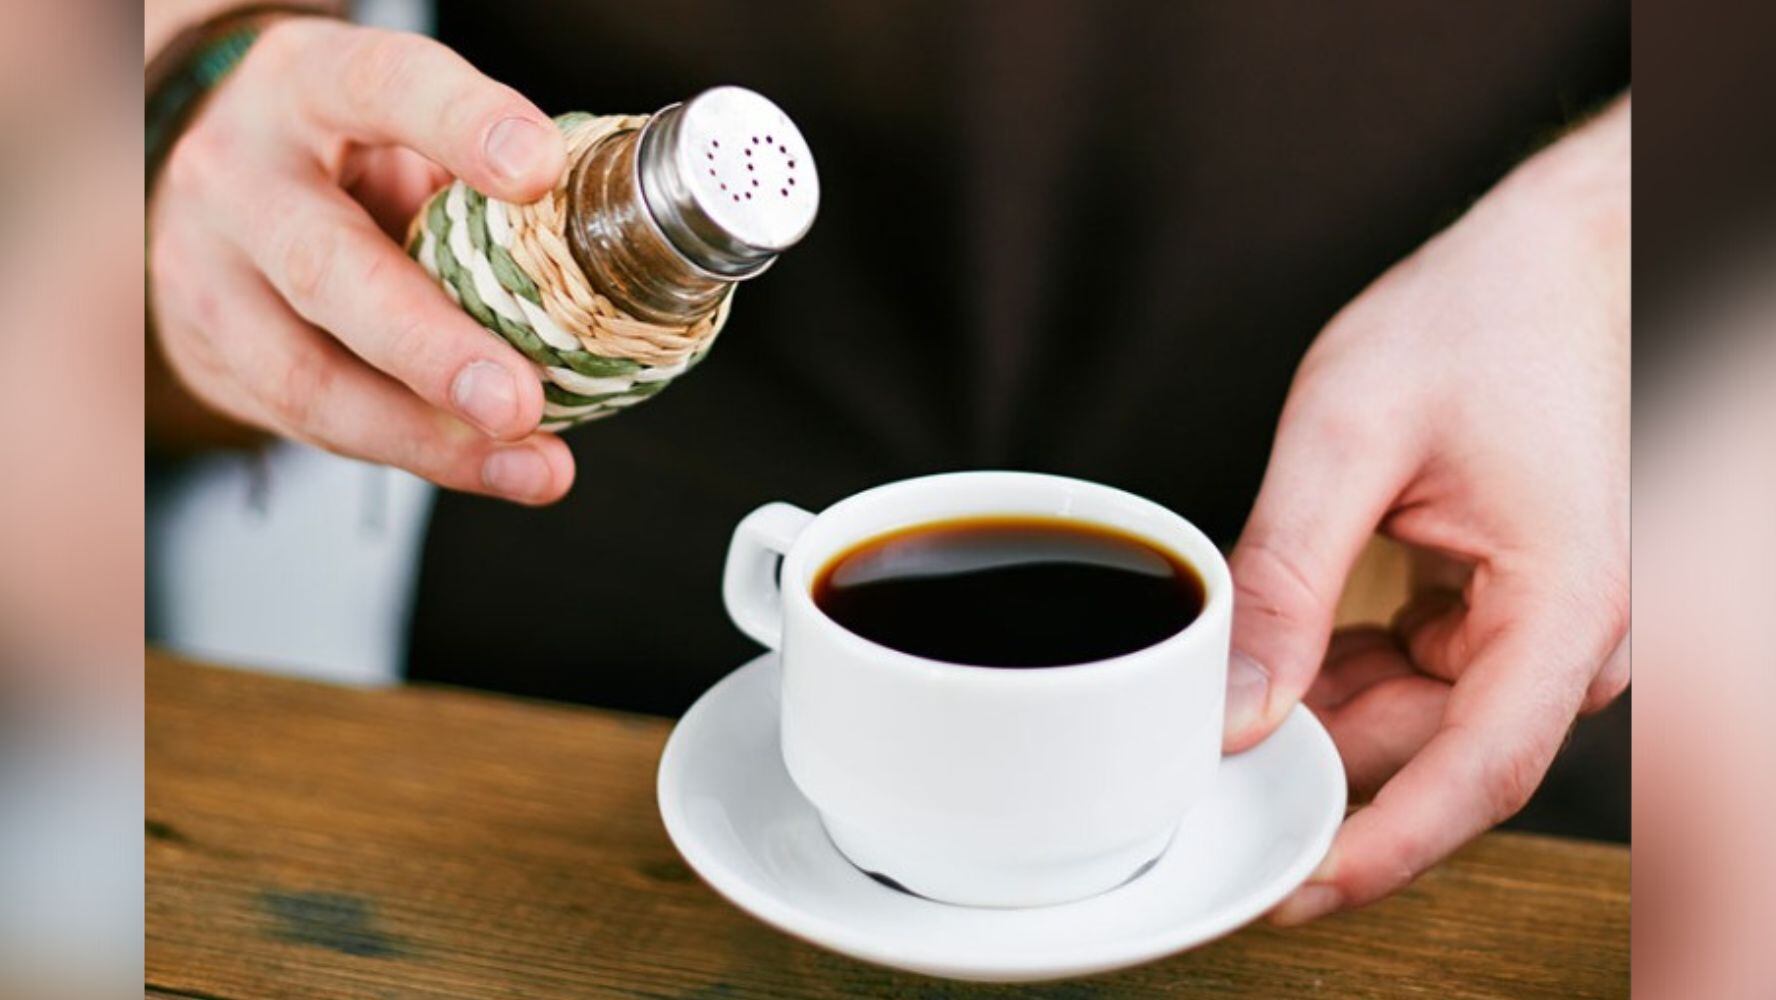 Hay quienes aseguran beber el café con sal porque mejora el sabor. (Foto: Shutterstock)